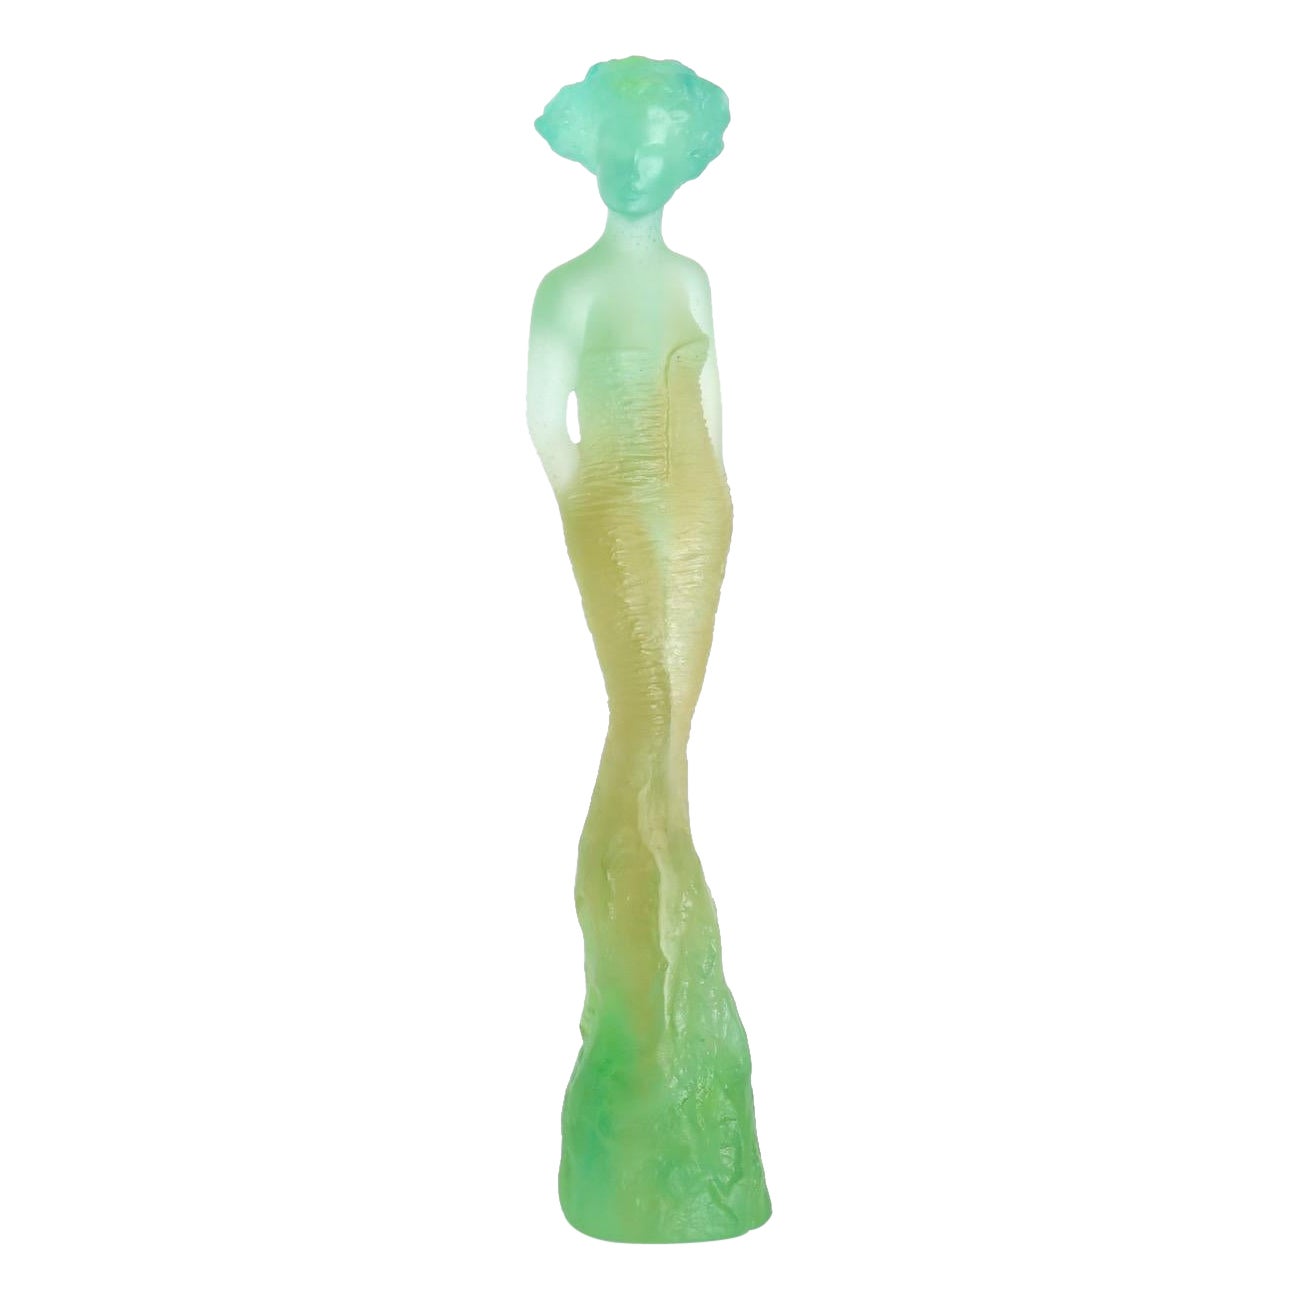 Sculpture en cristal Pate de Verre « Eleonore » de Daum, édition limitée 122 sur 425